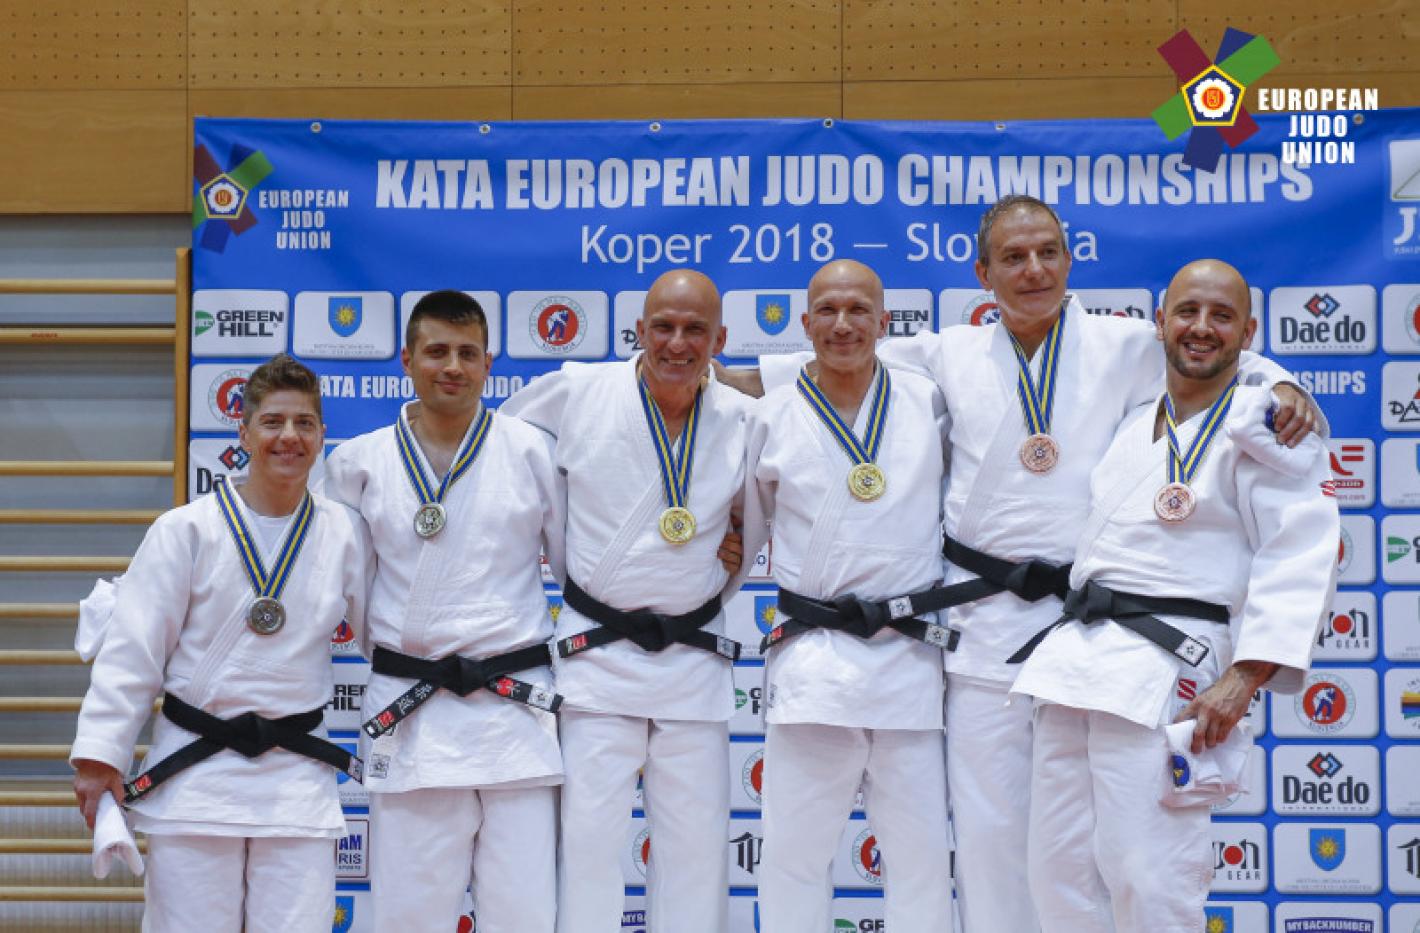 images/friuli_venezia_giulia/medium/EJU-Kata-European-Judo-Championships-Koper-2018-05-19-Carlos-Ferreira-317322.jpg